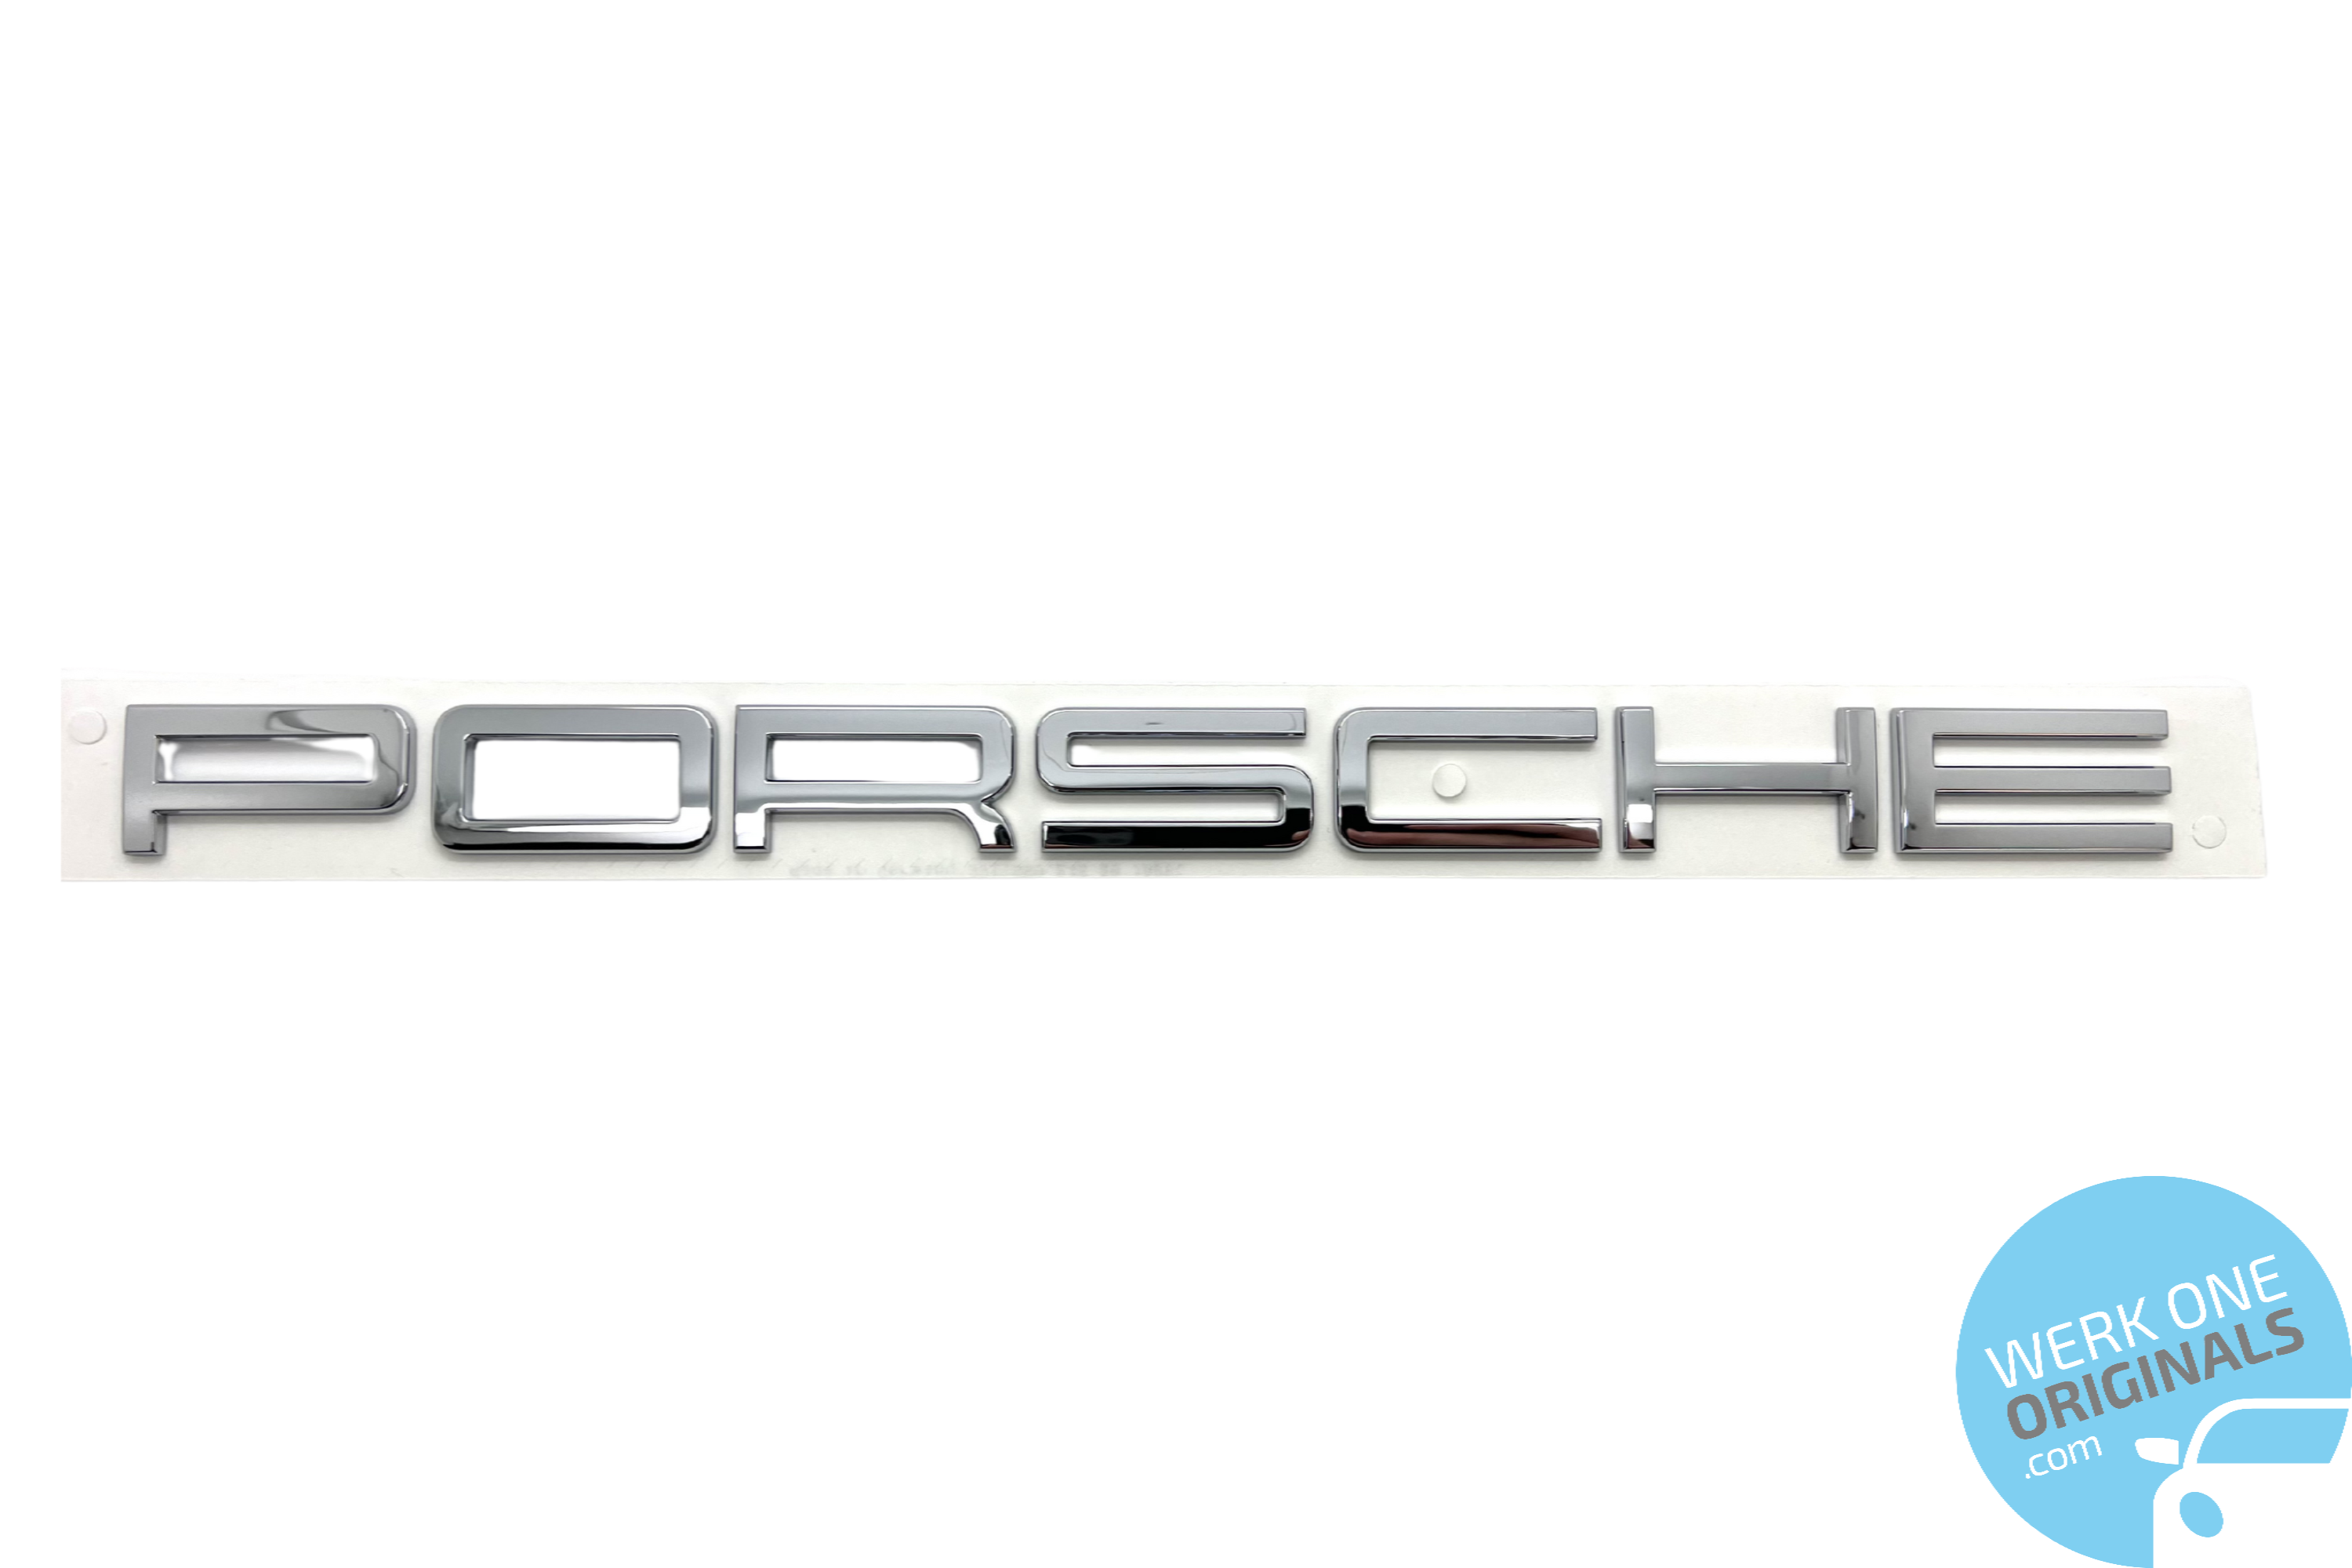 Porsche Official 'Porsche 911 Carrera 4' Rear Badge Decal in Chrome Silver for 911 Type 991 Carrera 4 Models